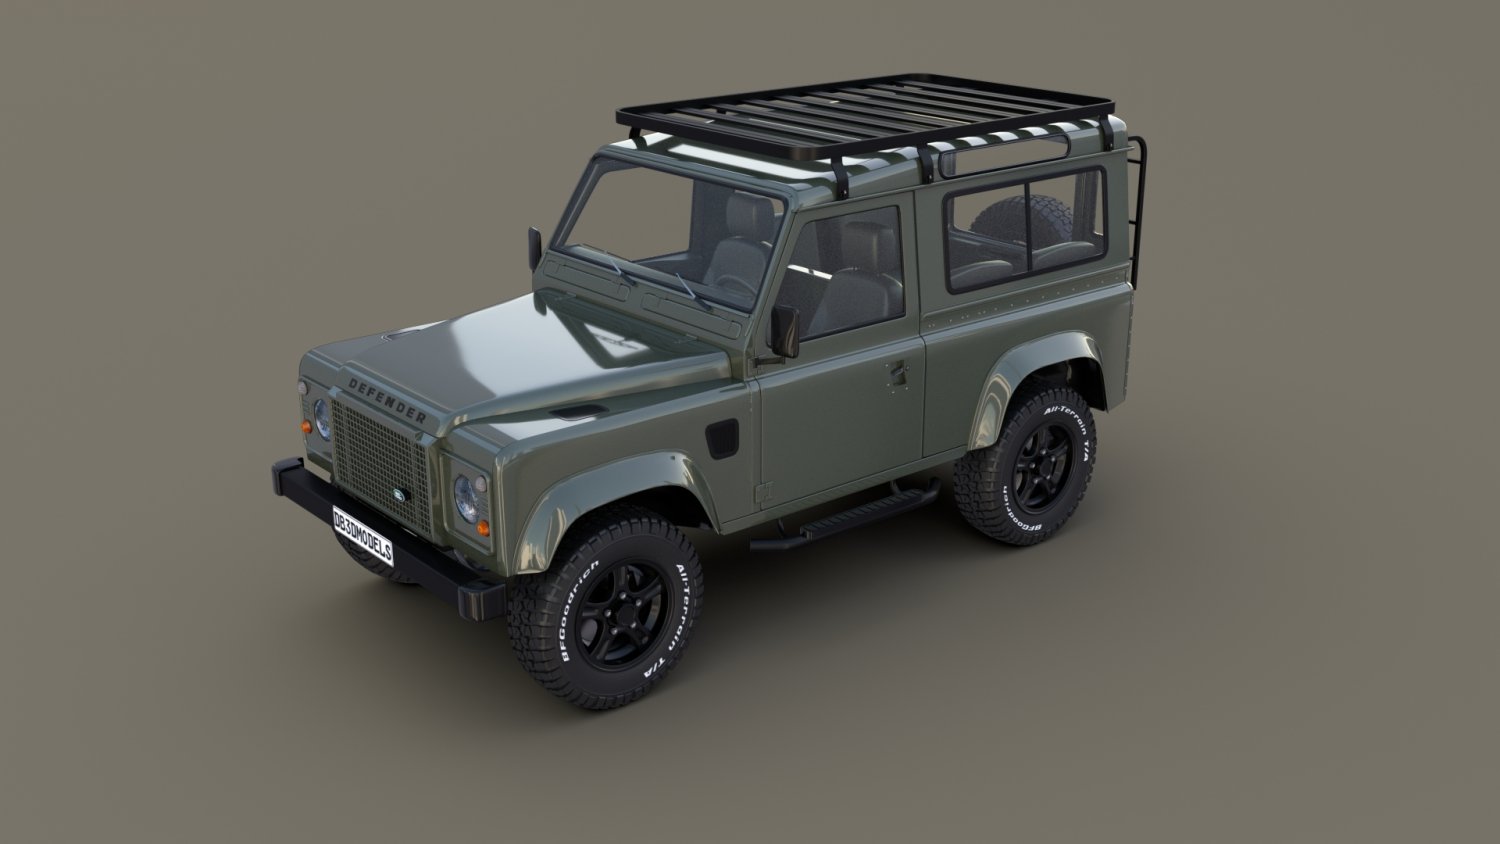 Genuine Land Rover Defender 3D Keyring Silver 